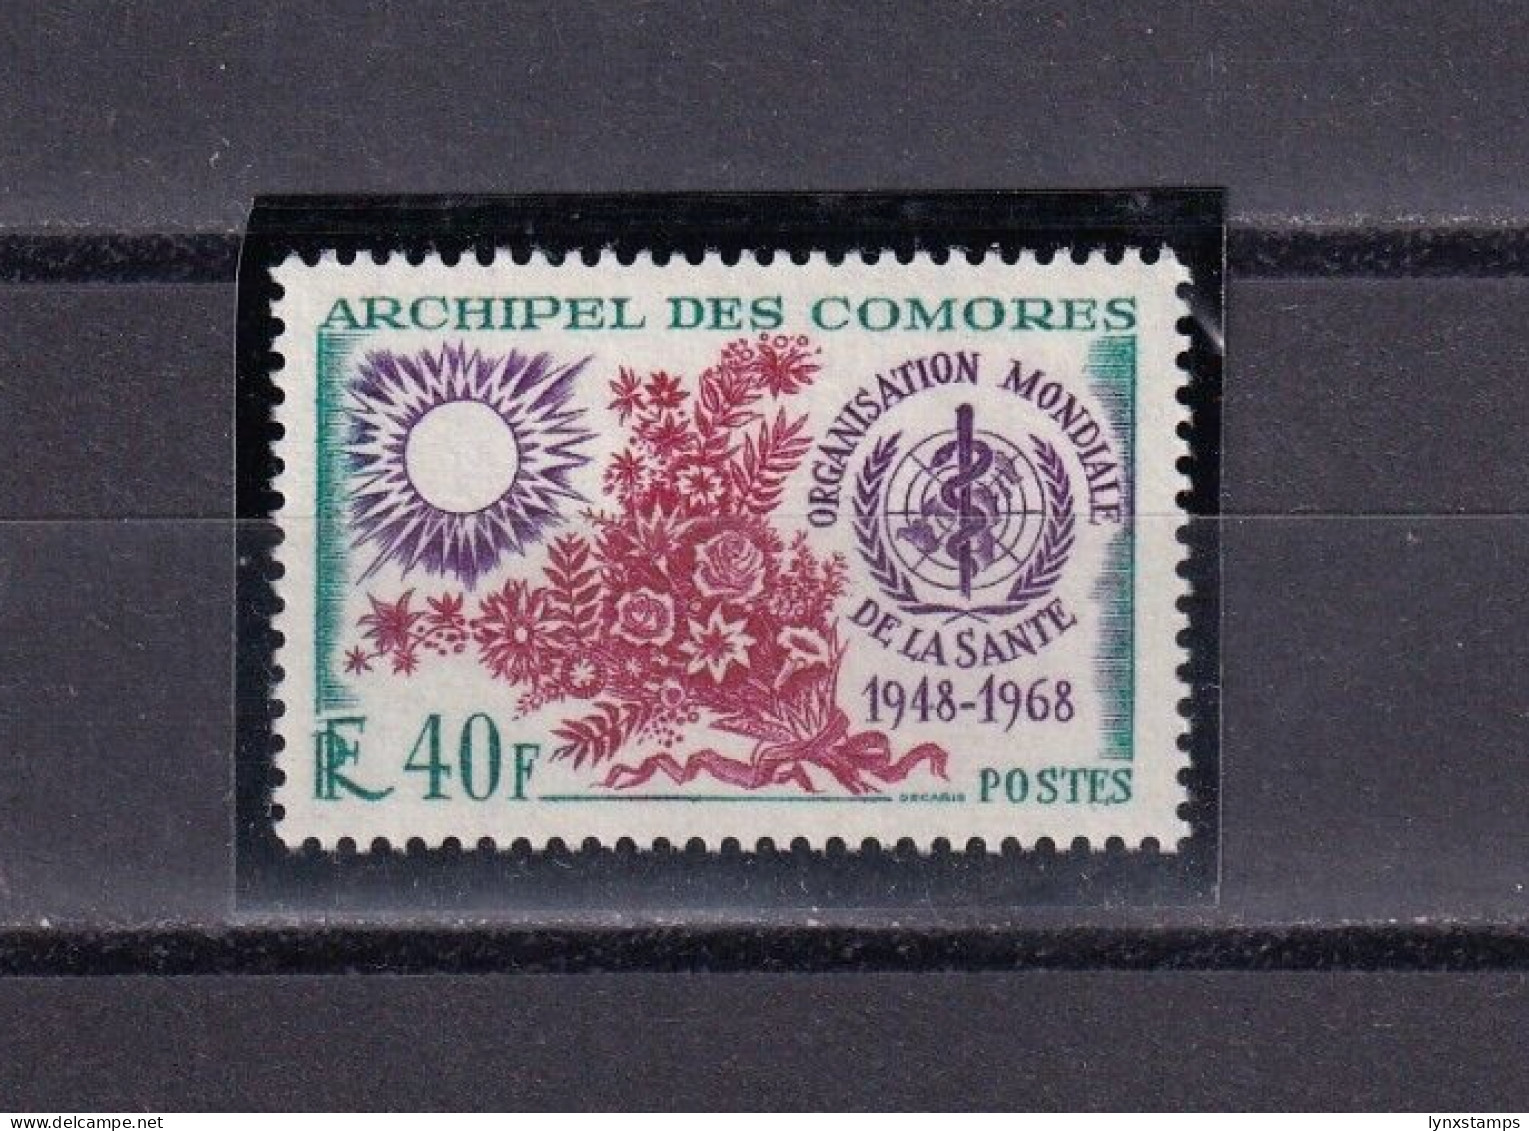 SA06c Comoros 1968 W.H.O. - 20th Anniversary Mint Stamp - Comores (1975-...)